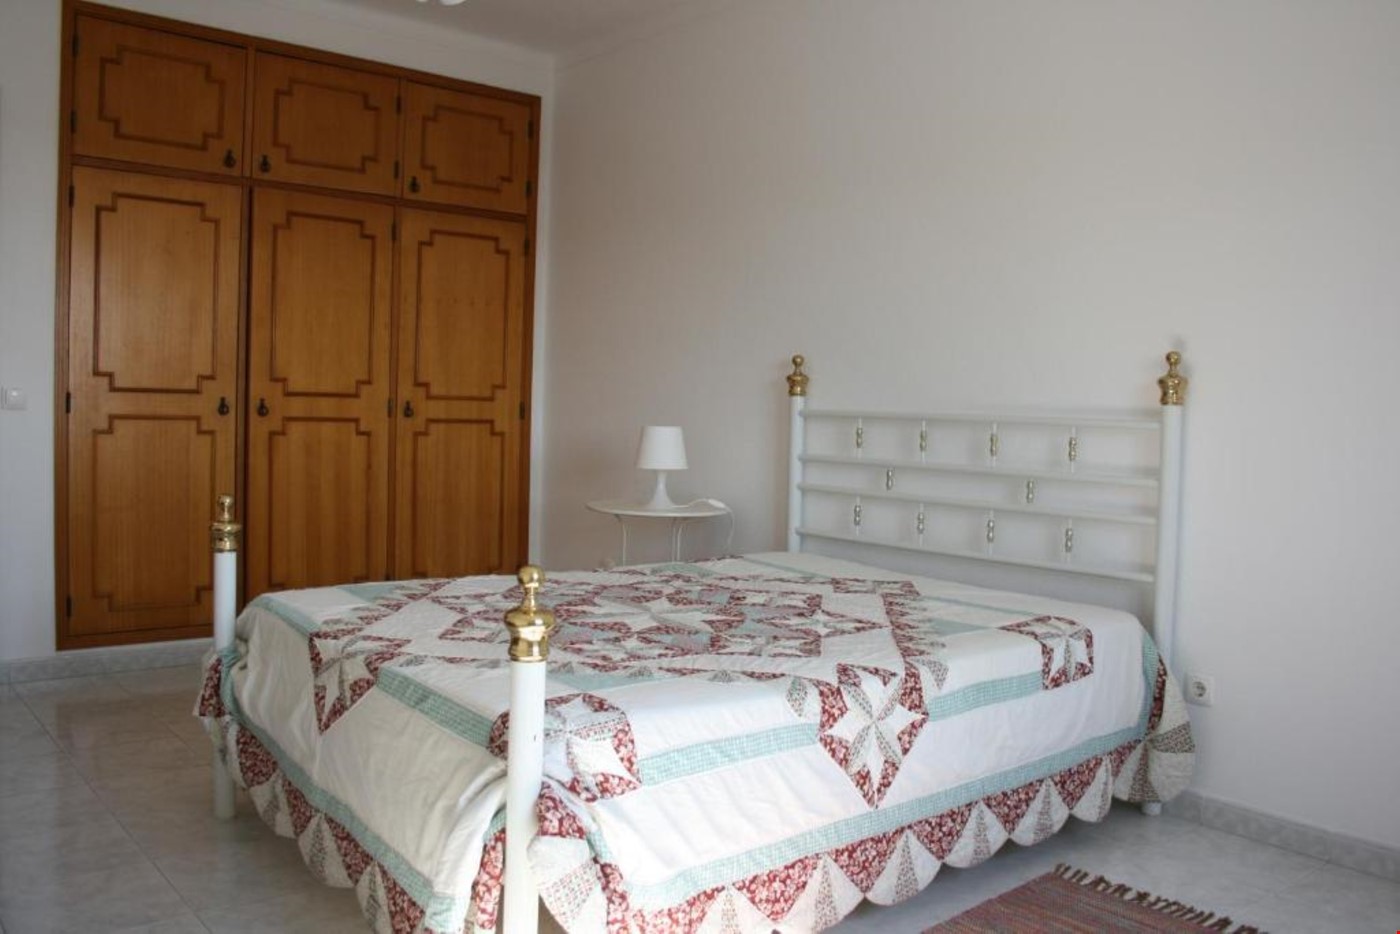 Hotel Vila Nova de Milfontes Portugal nomad remote 7a843fa5-a889-4b92-bbe6-b7e2a415d1b8_quarto1v2.jpg